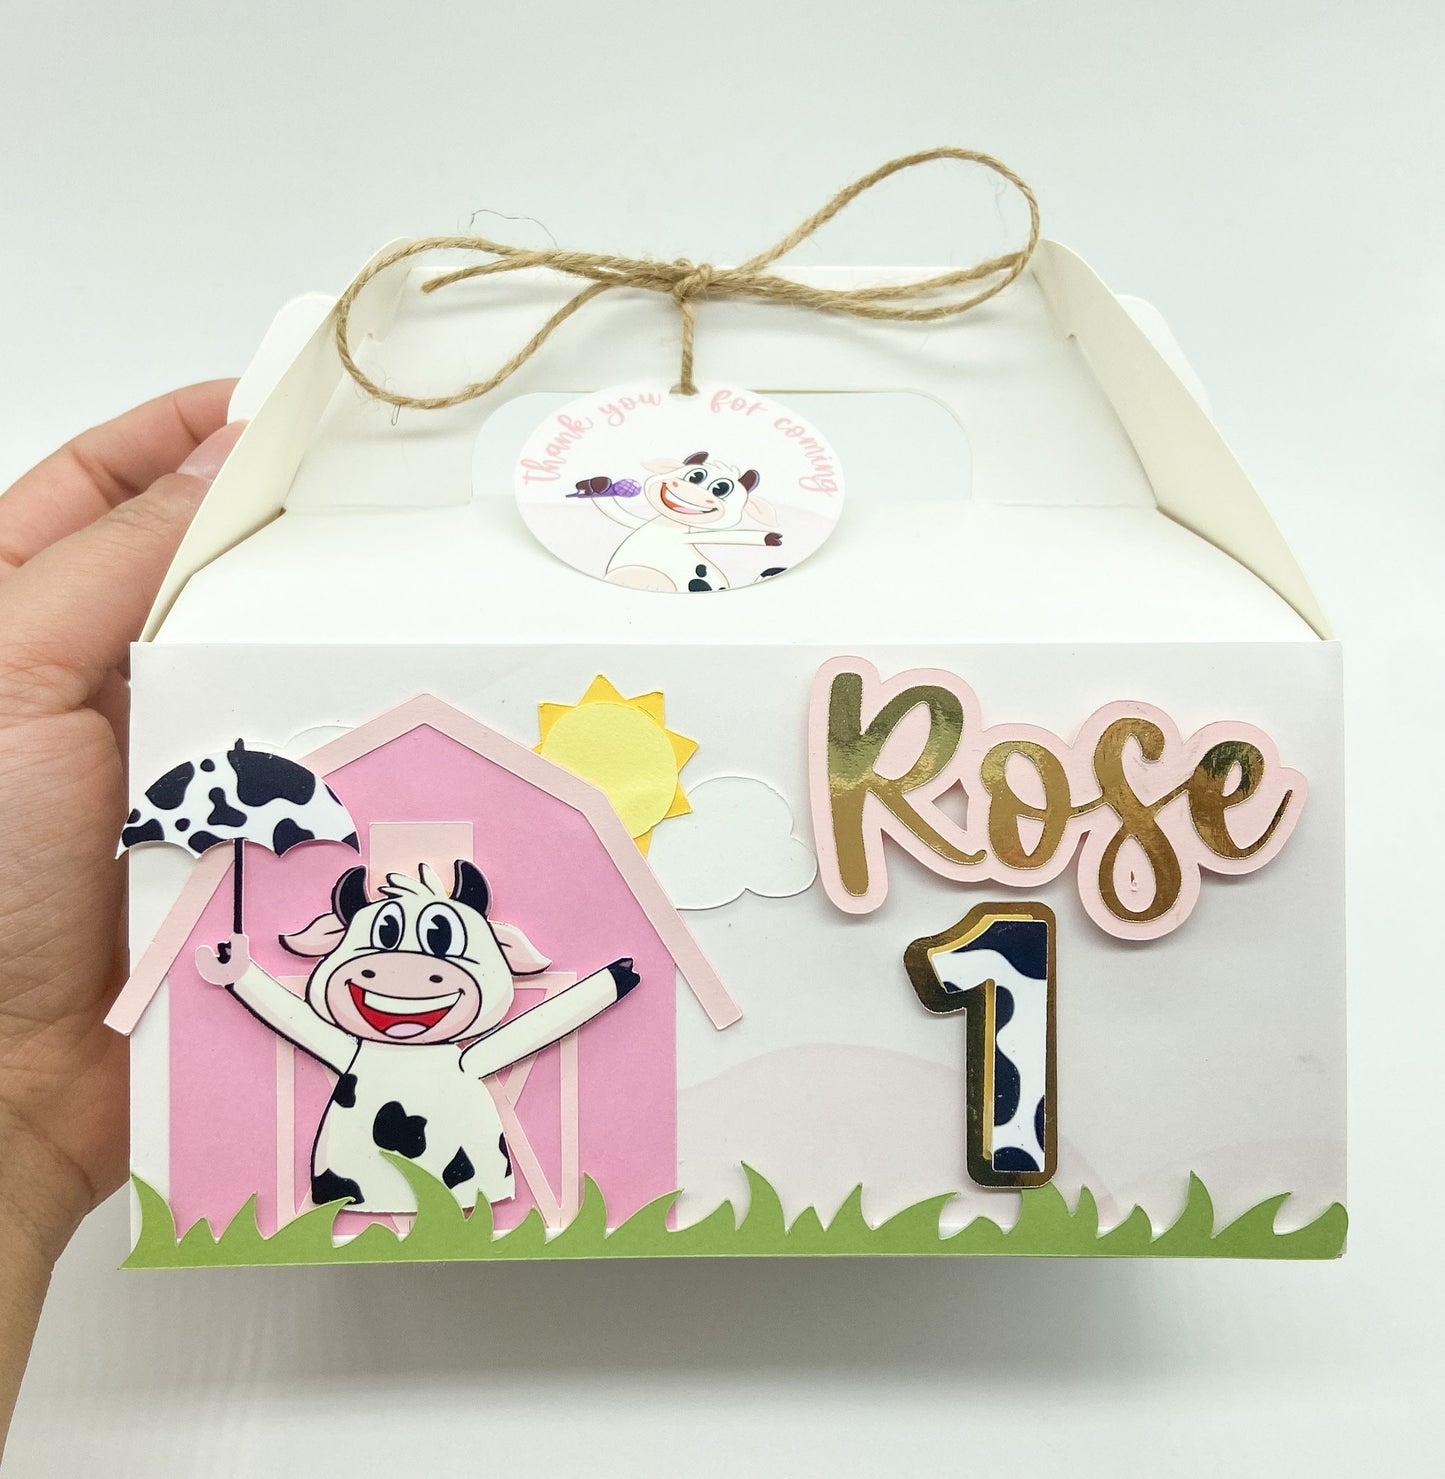 La vaca Lola favor box | Treat box | personalized favor box | Party gift box | farm theme birthday | la vaca Lola party | birthday favors